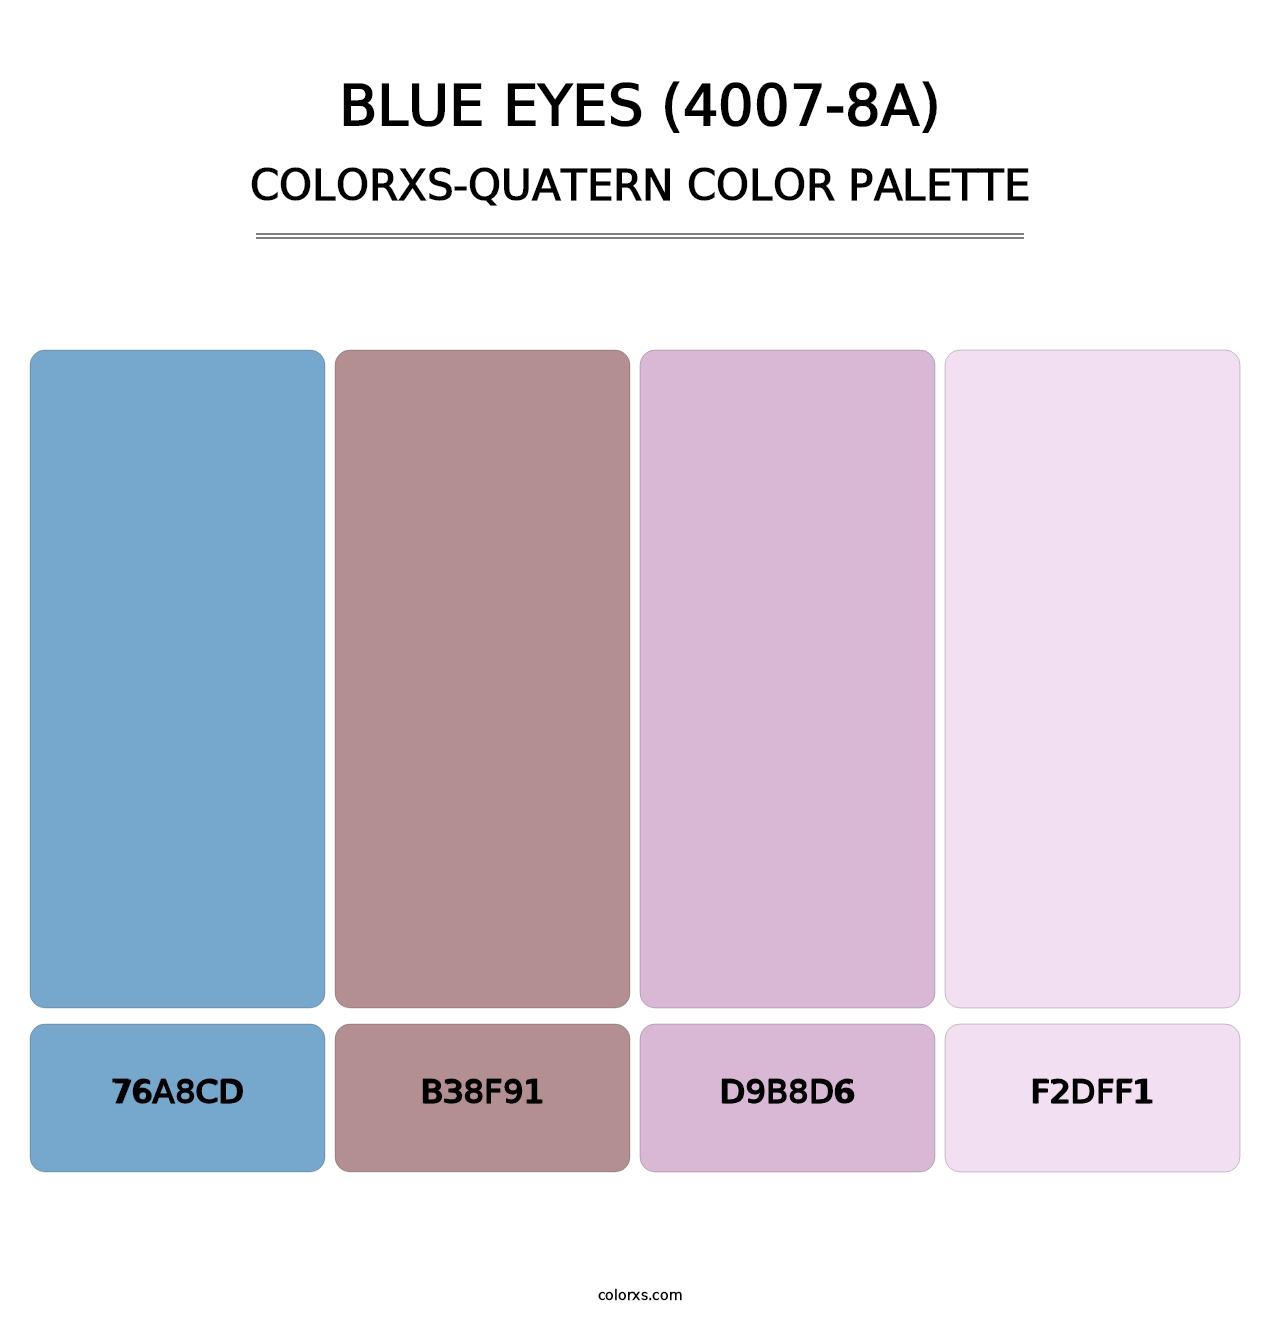 Blue Eyes (4007-8A) - Colorxs Quatern Palette